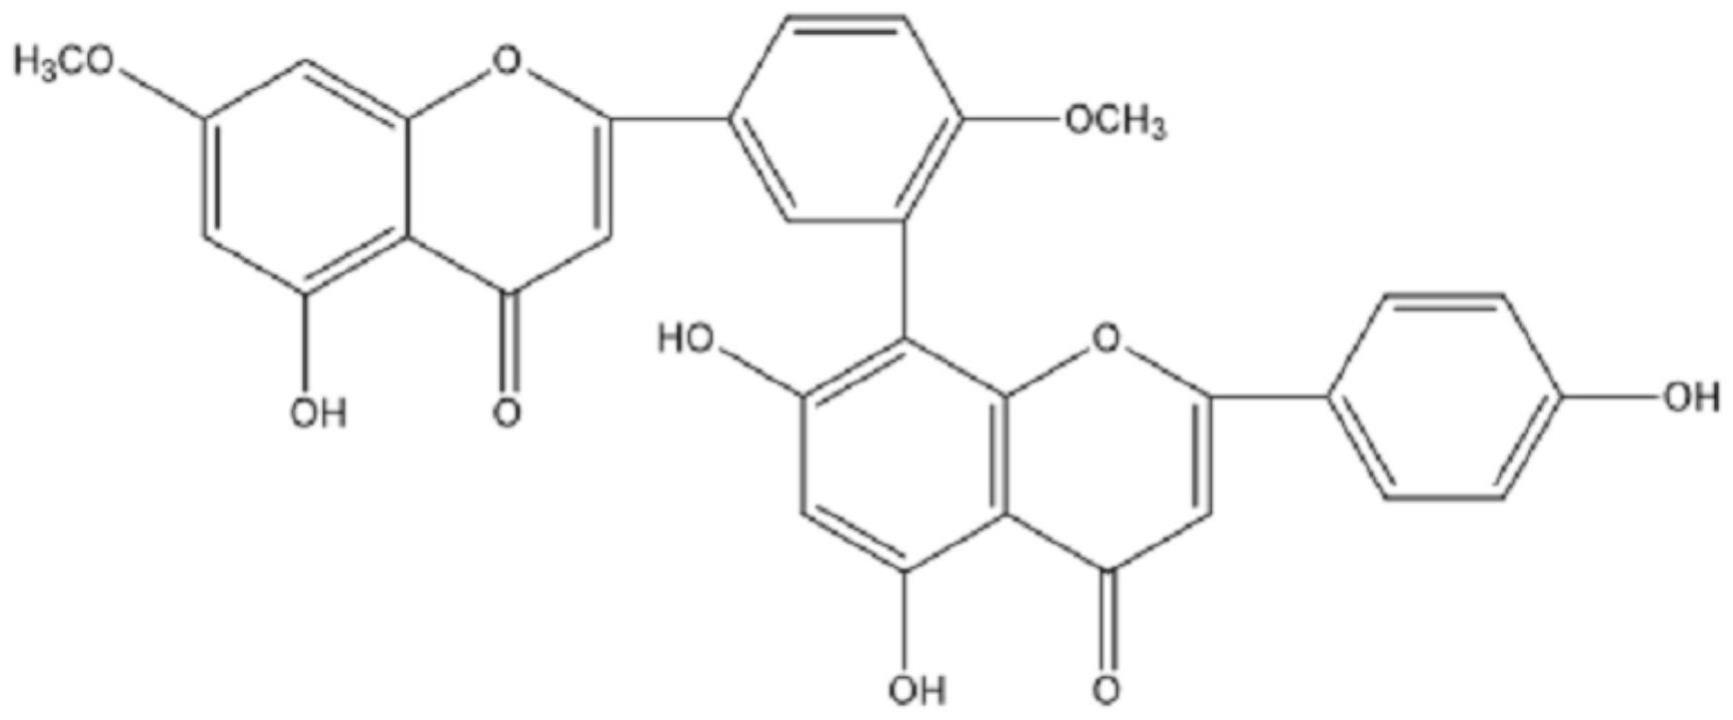 一种银杏双黄酮的制备方法和应用与流程